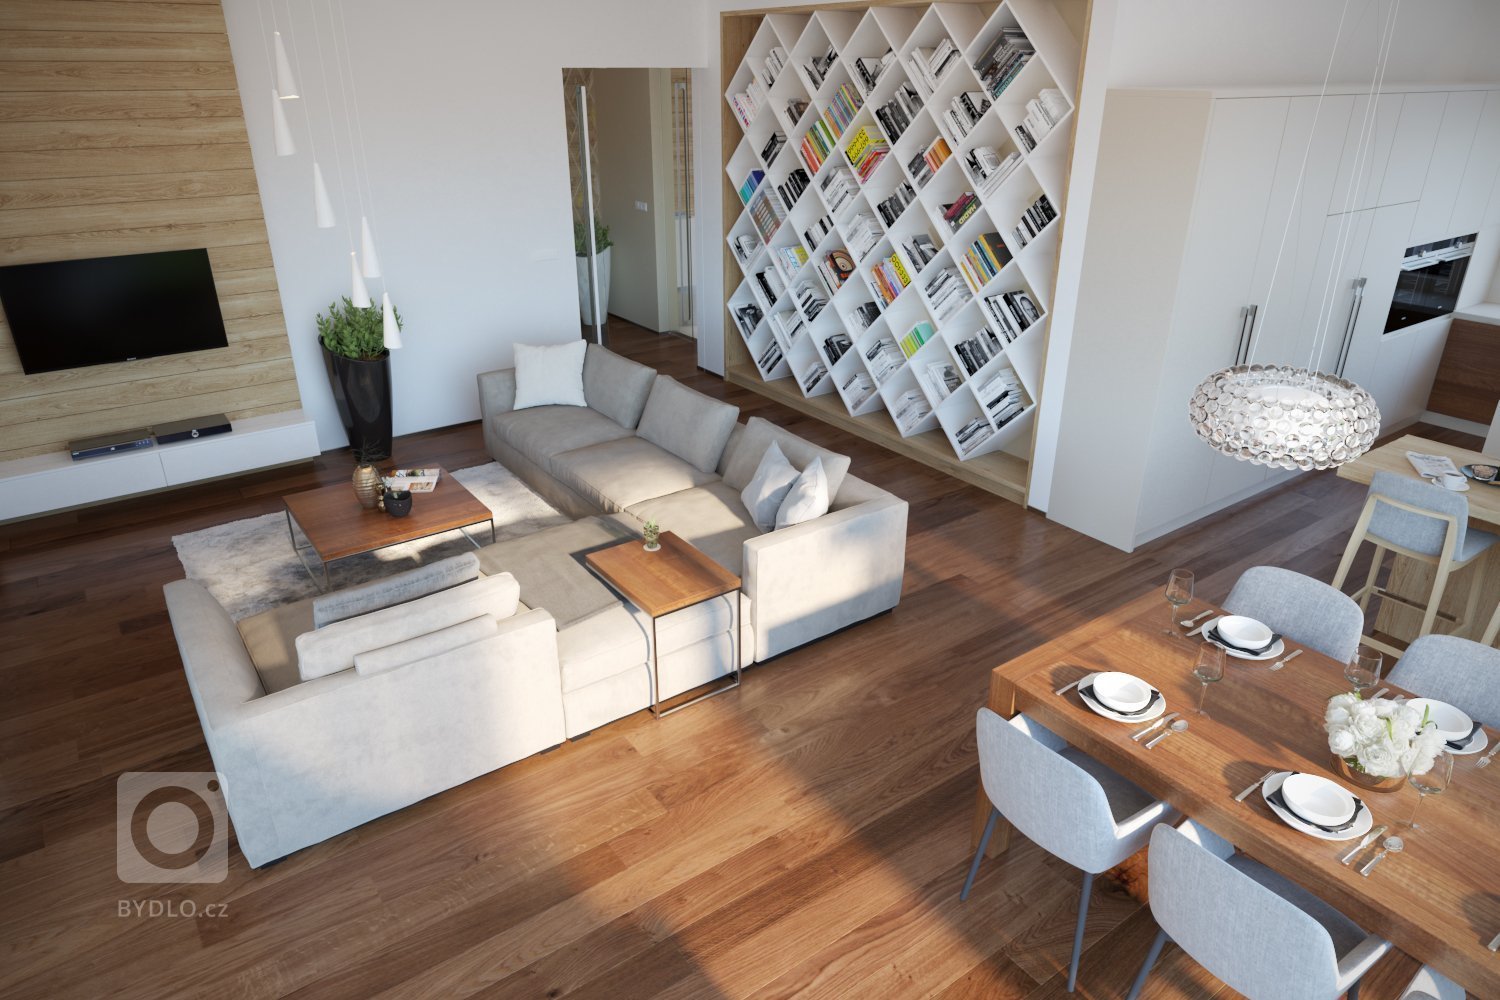 Návrh a vizualizácie luxusného bytu v Prahe. V prvej časťi projektu som vypracoval návrh a vizualizácie obývacej izby spojenej s jedálňou a kuchyňou. V druhej…